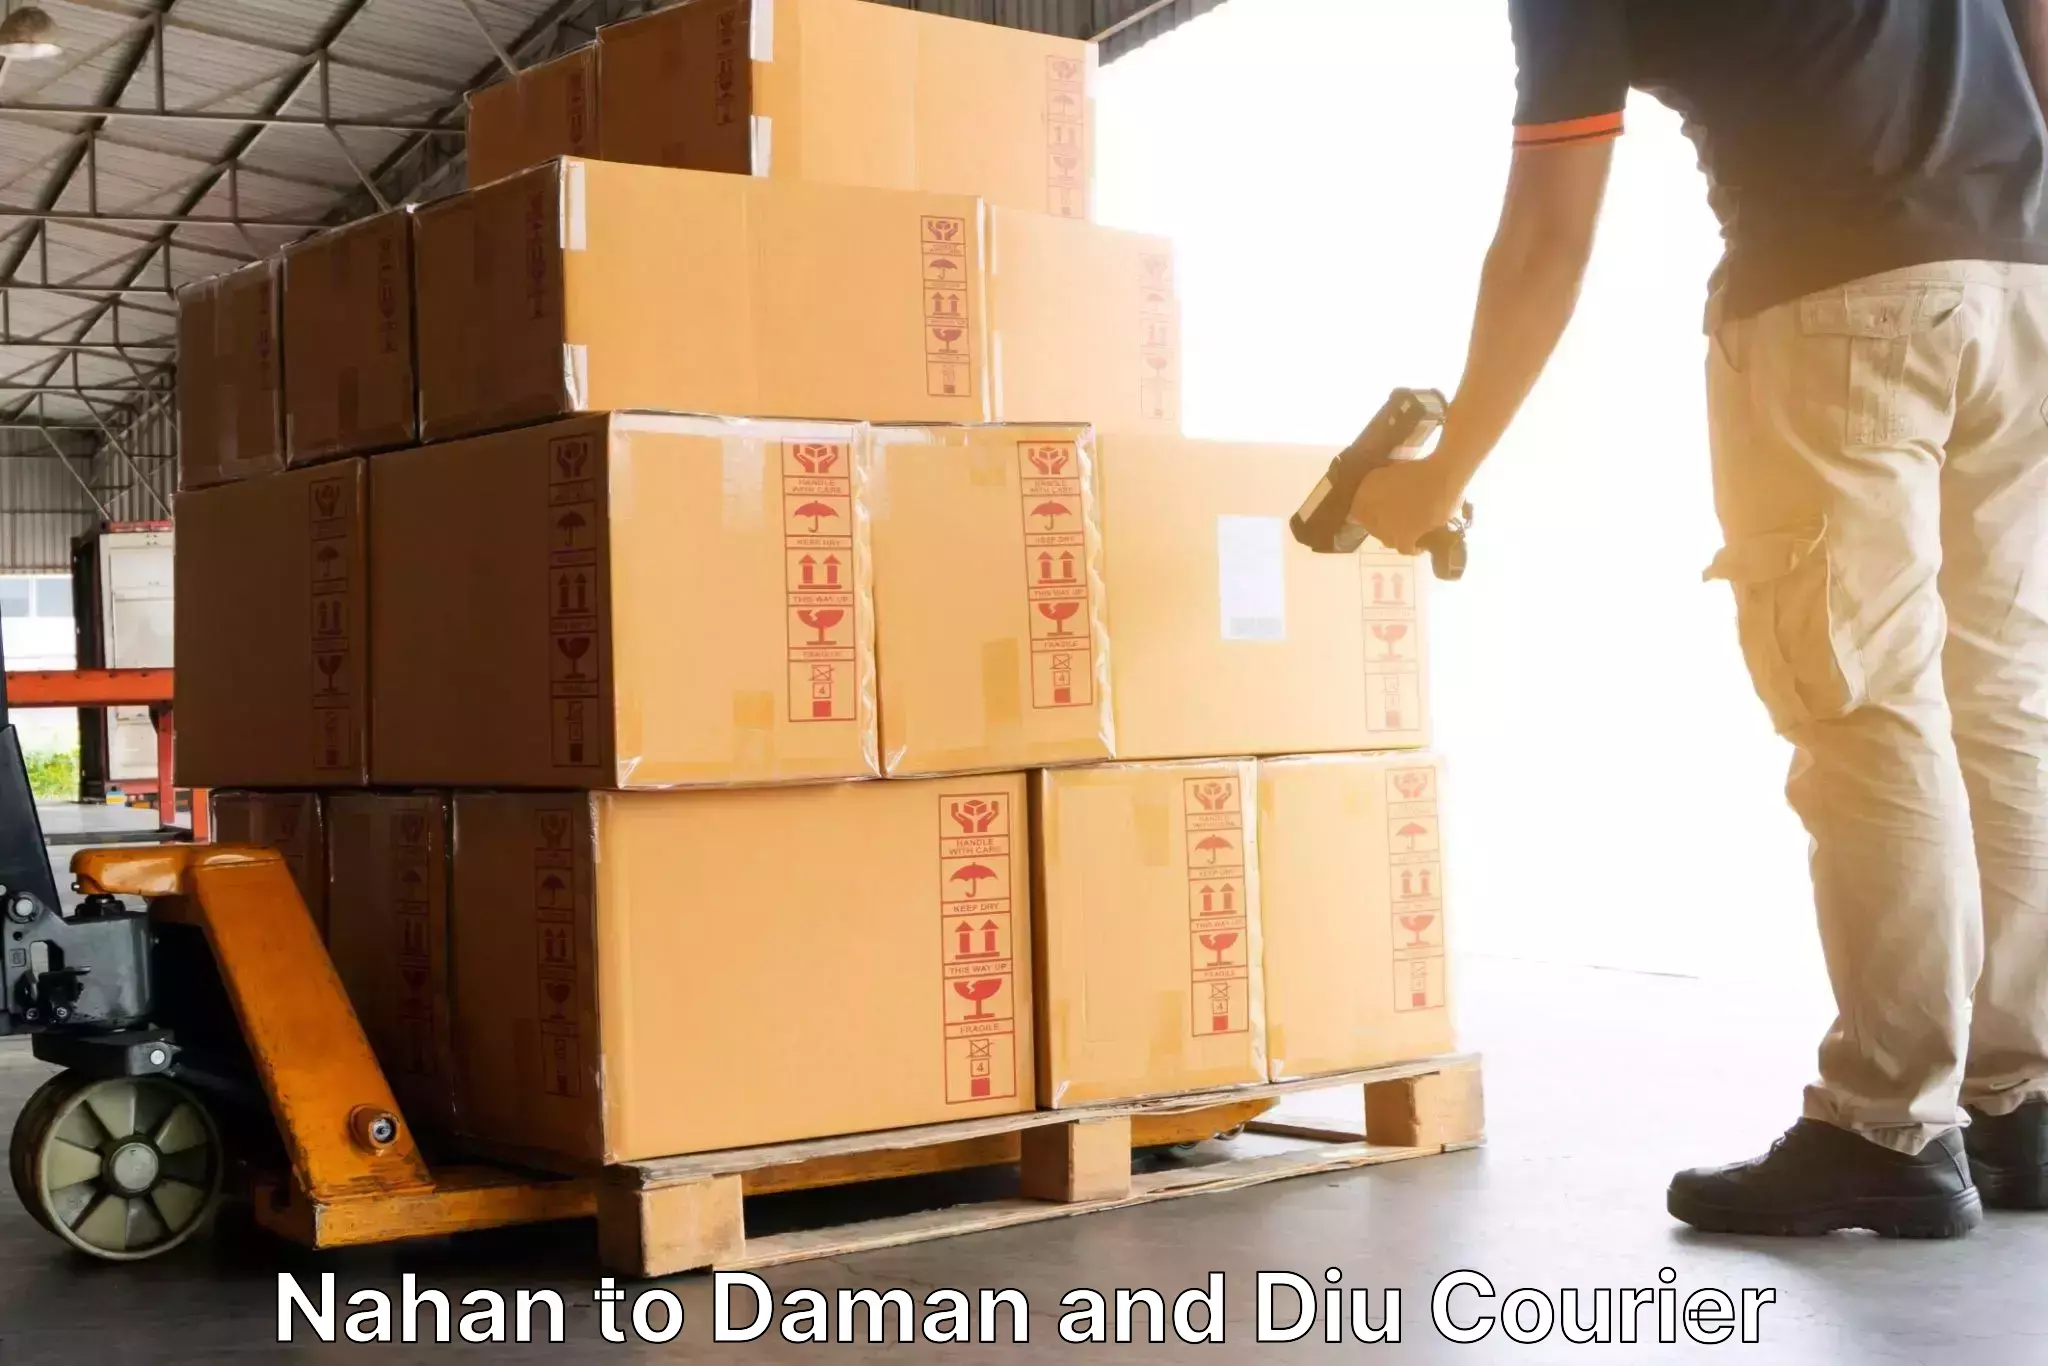 Courier app Nahan to Daman and Diu